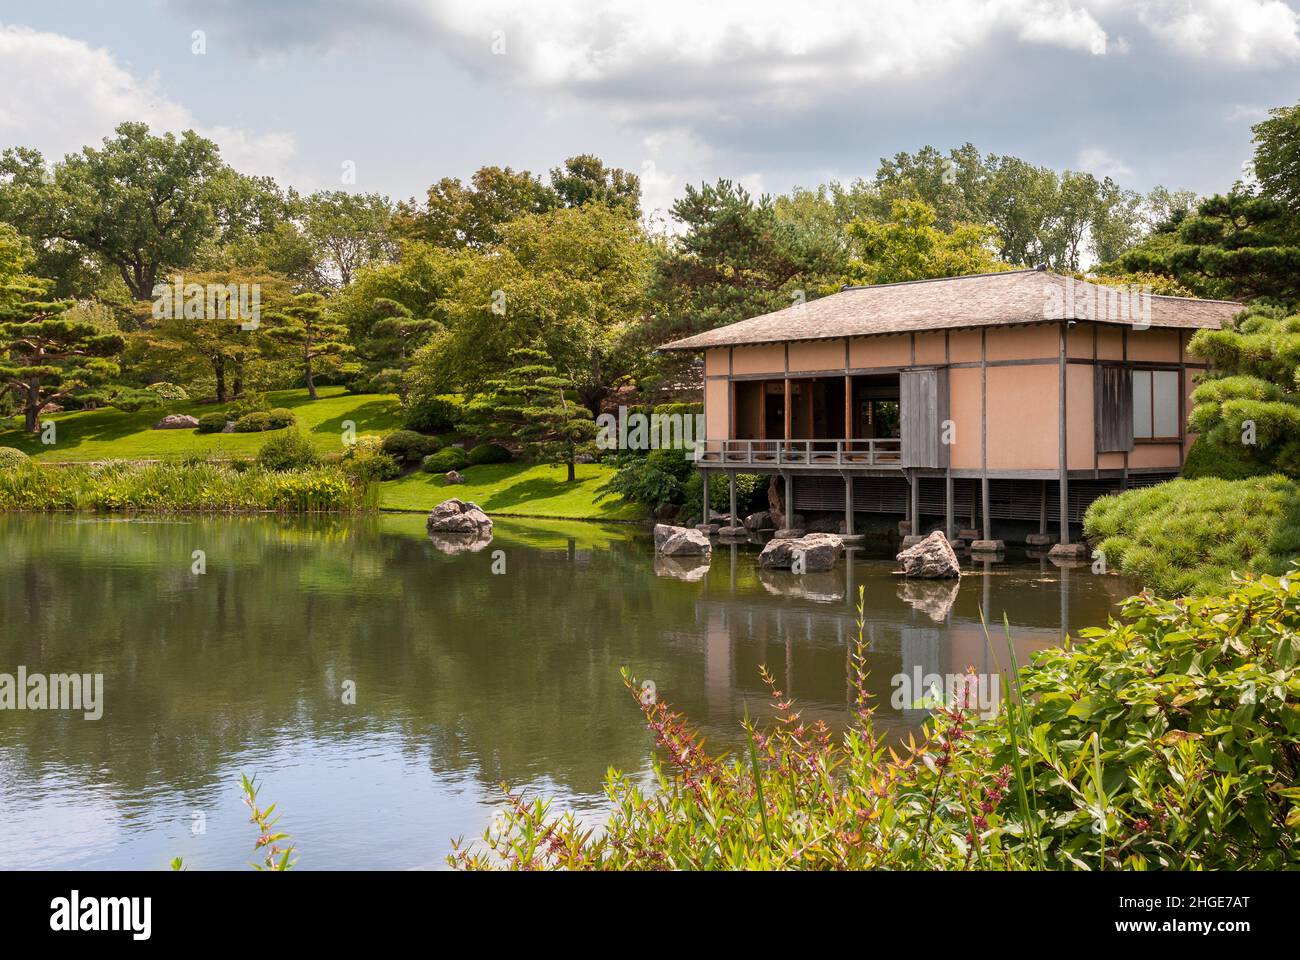 Japanese Island area at Chicago Botanic Garden, Glencoe, Illinois, USA Stock Photo